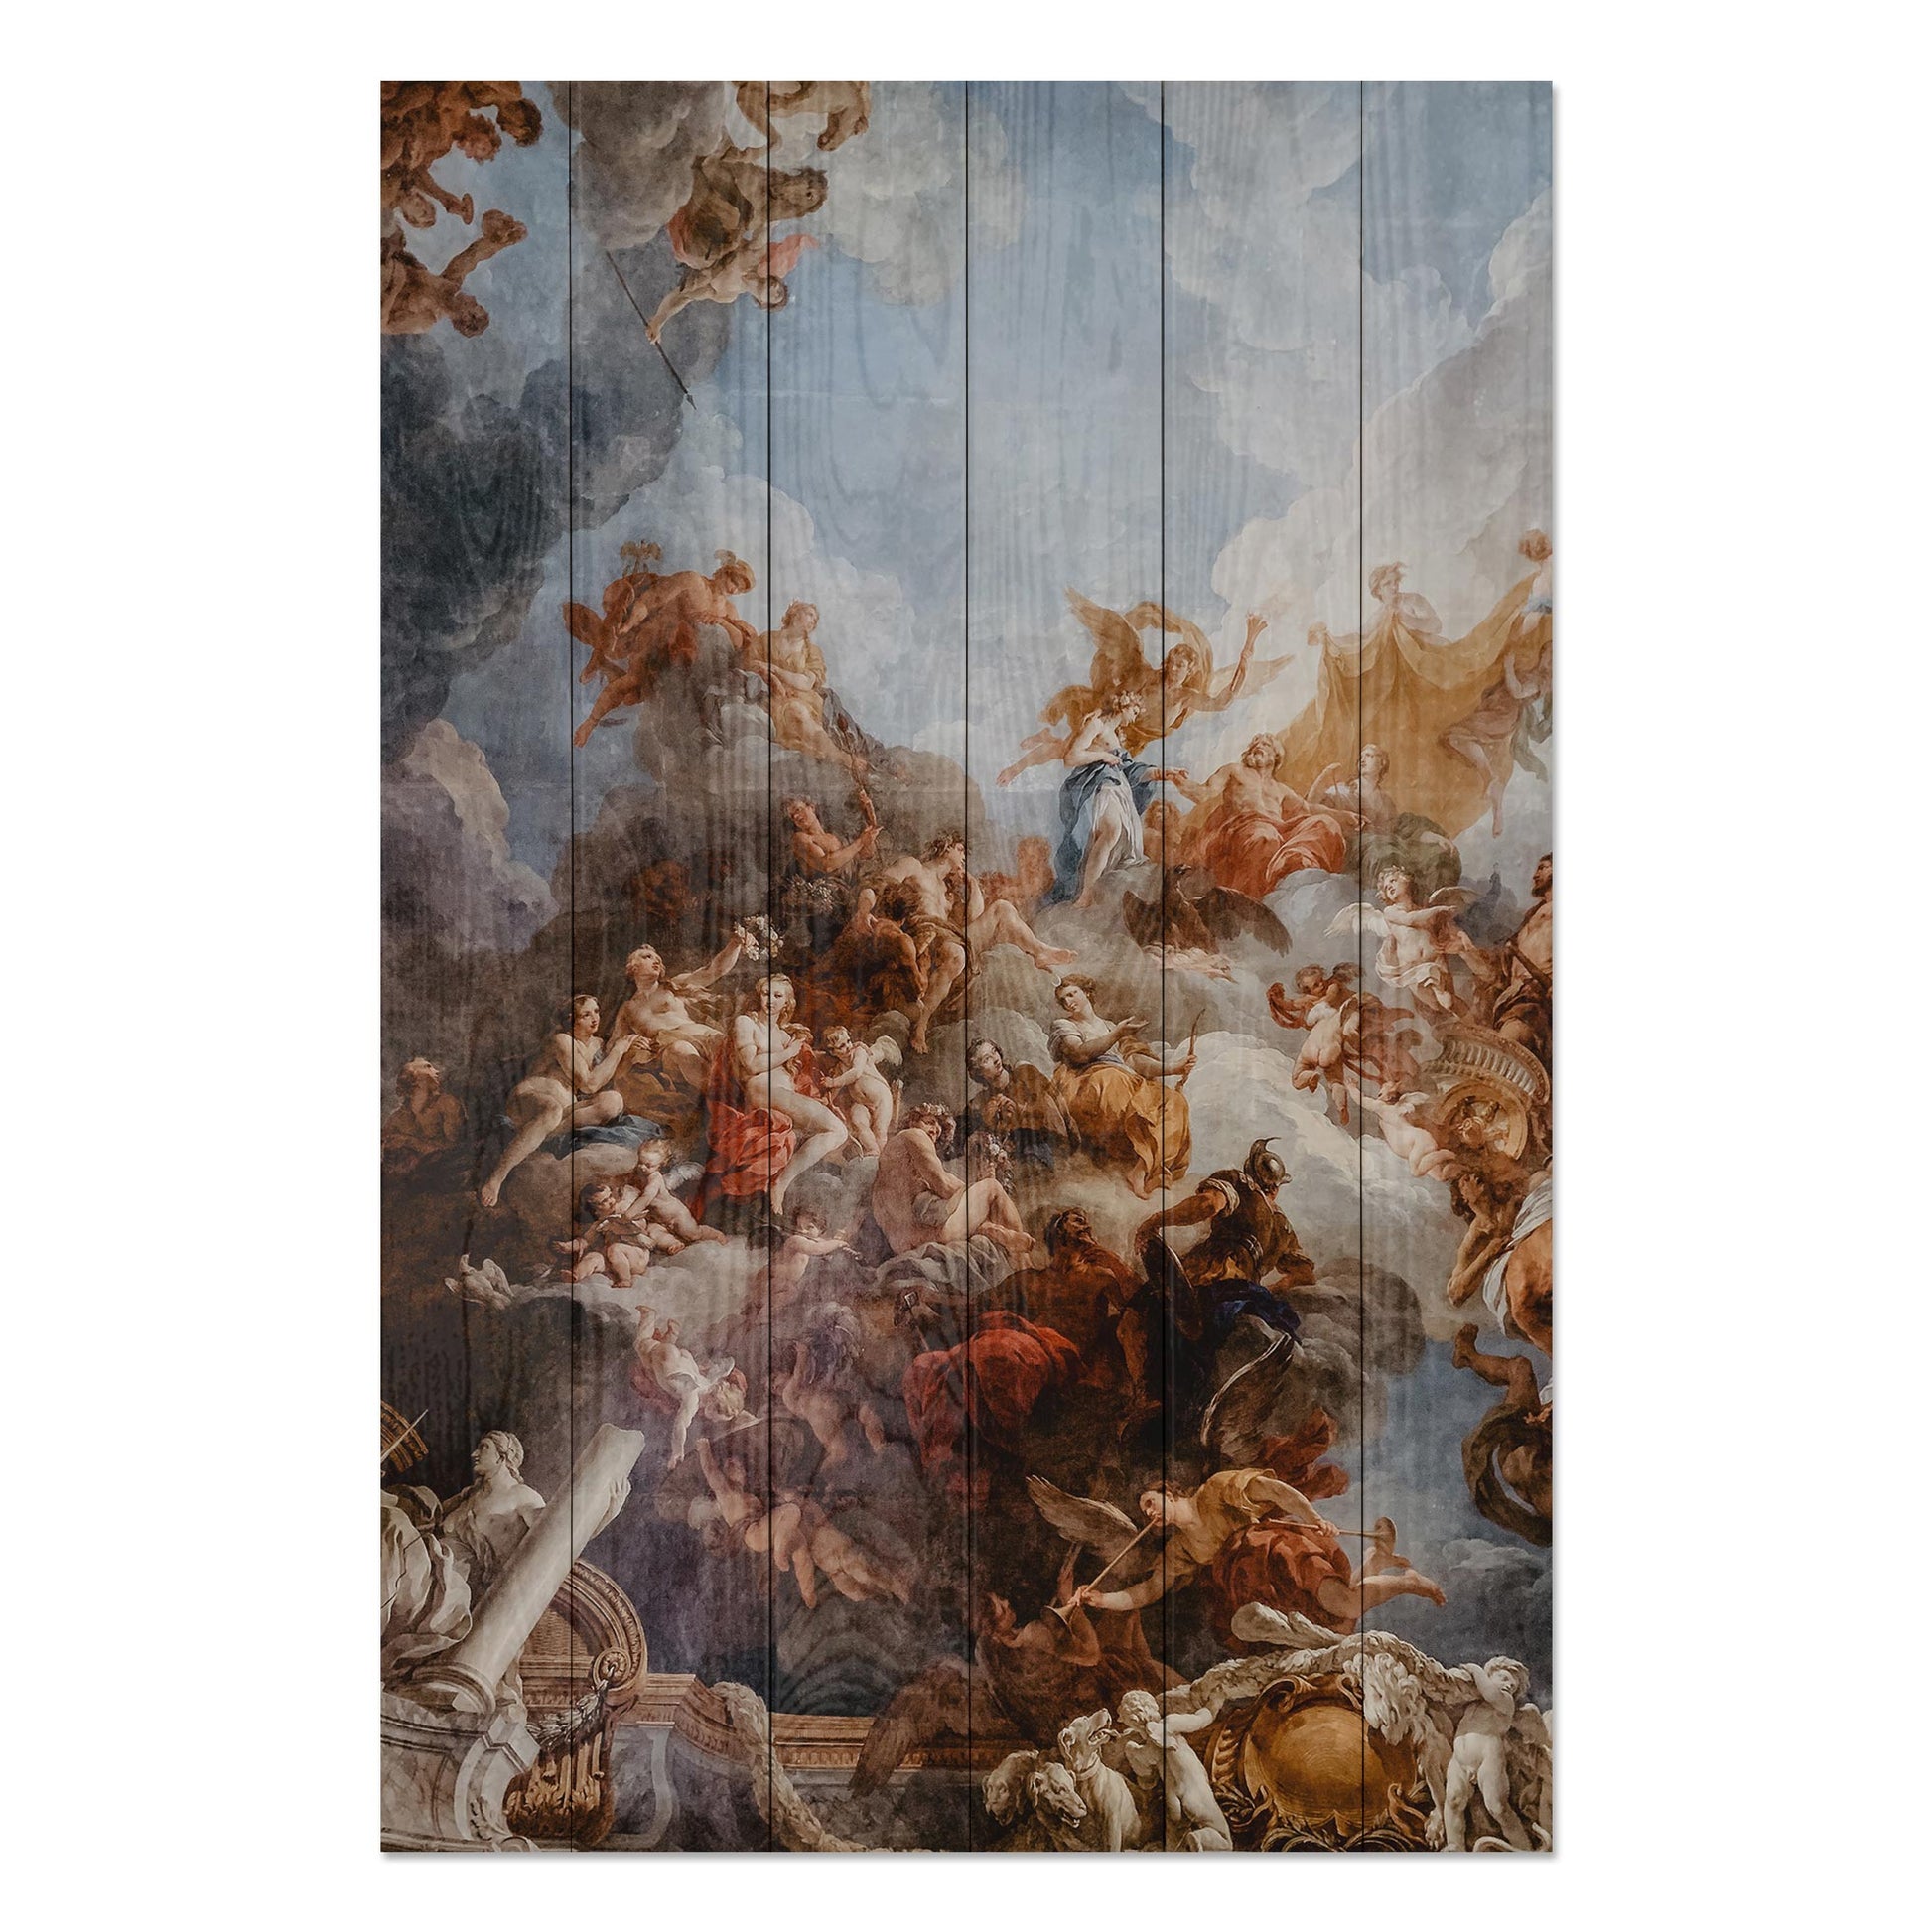 Obraz na drewnie Dzieło Michała Anioła - The Work of Michelangelo